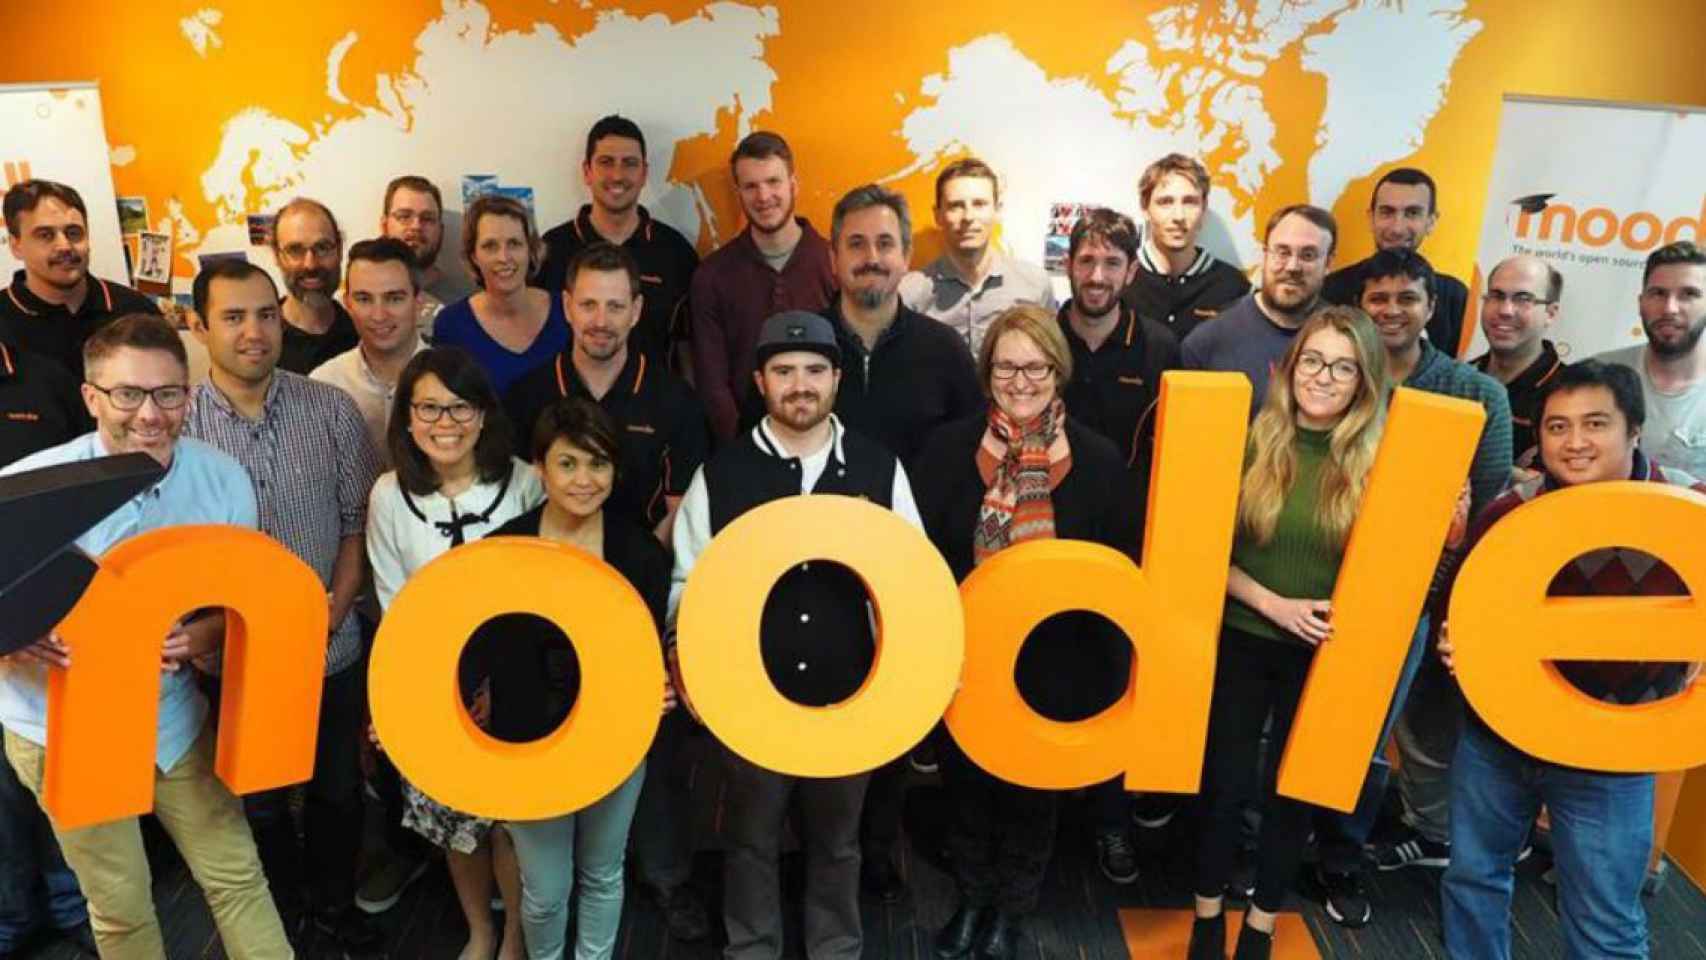 Moodle es una compañía australiana especializada en educación a través de internet / Moodle